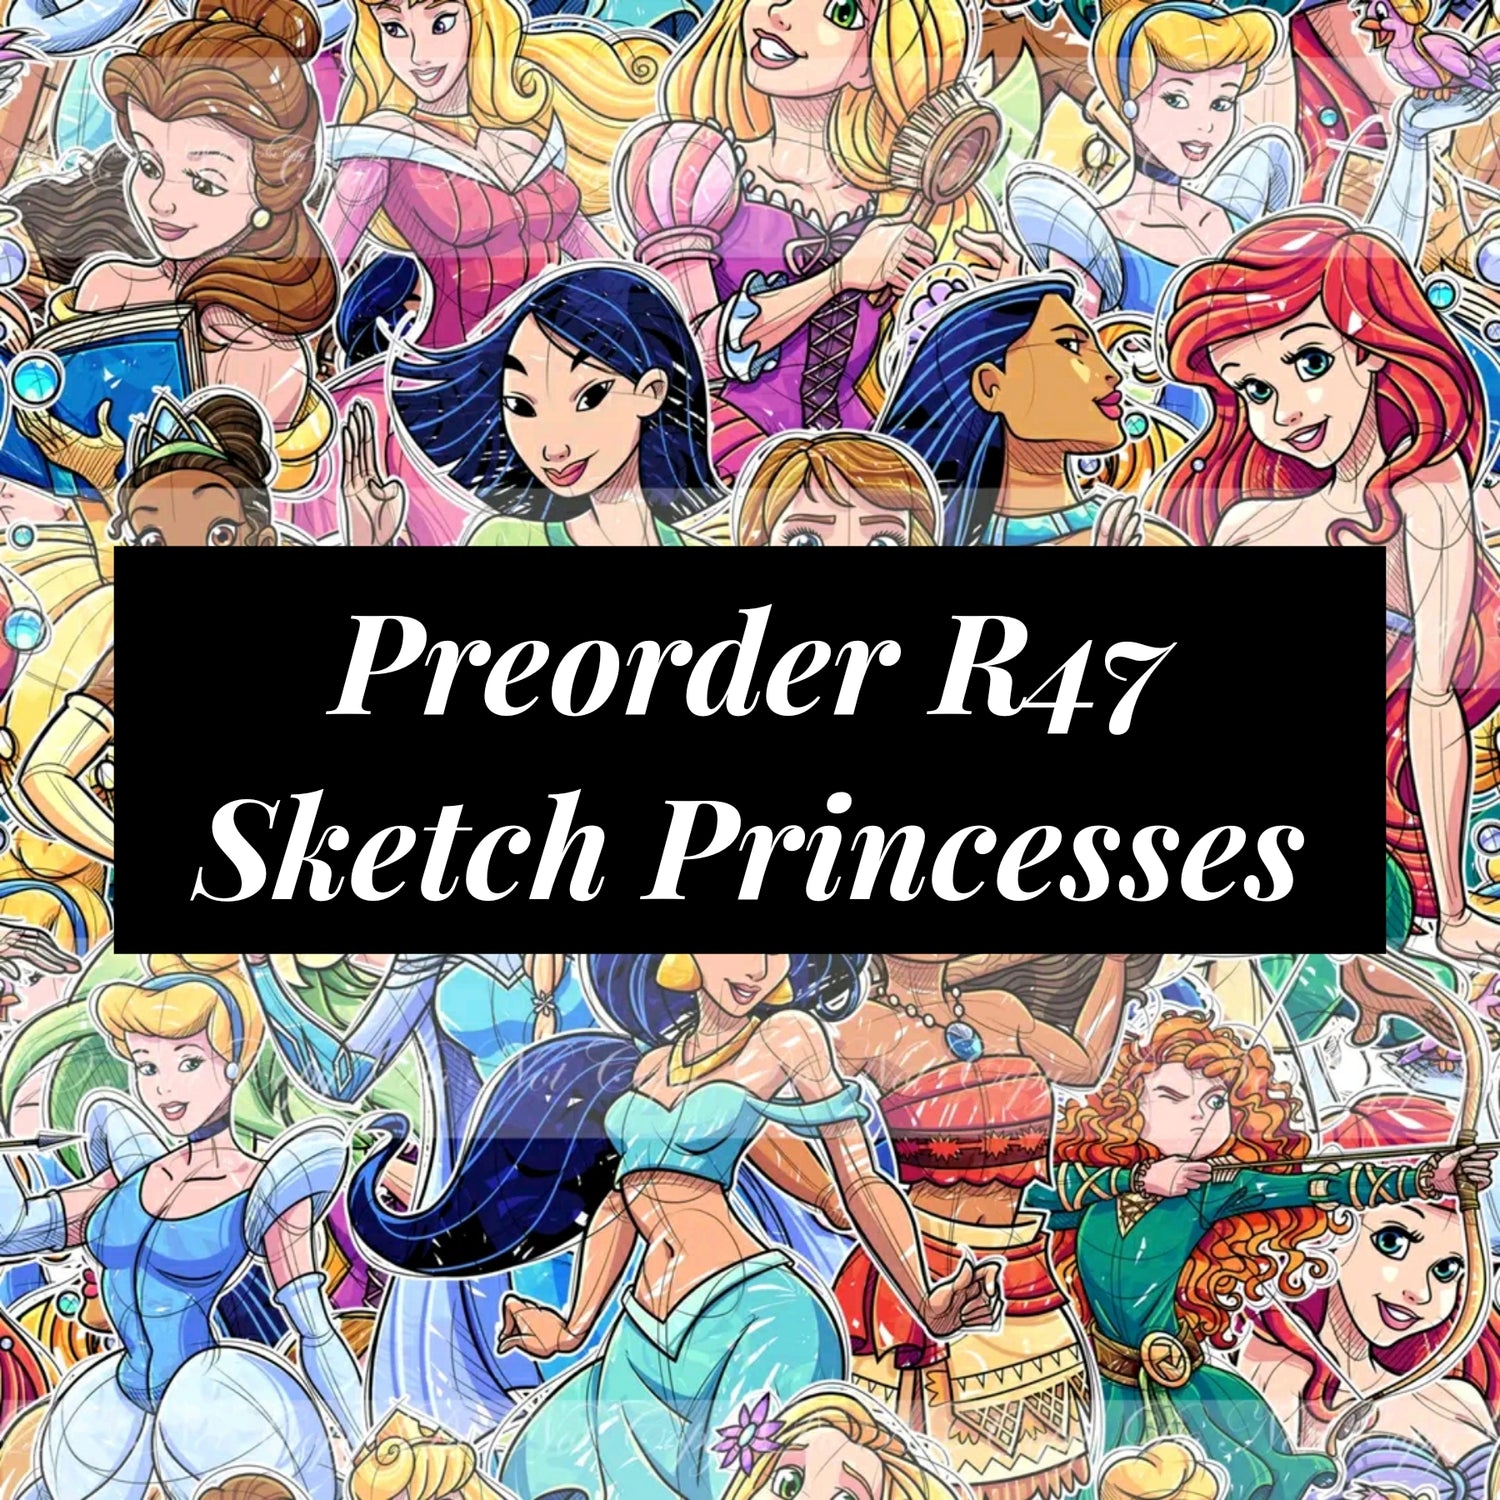 Preorder R47 Princesses